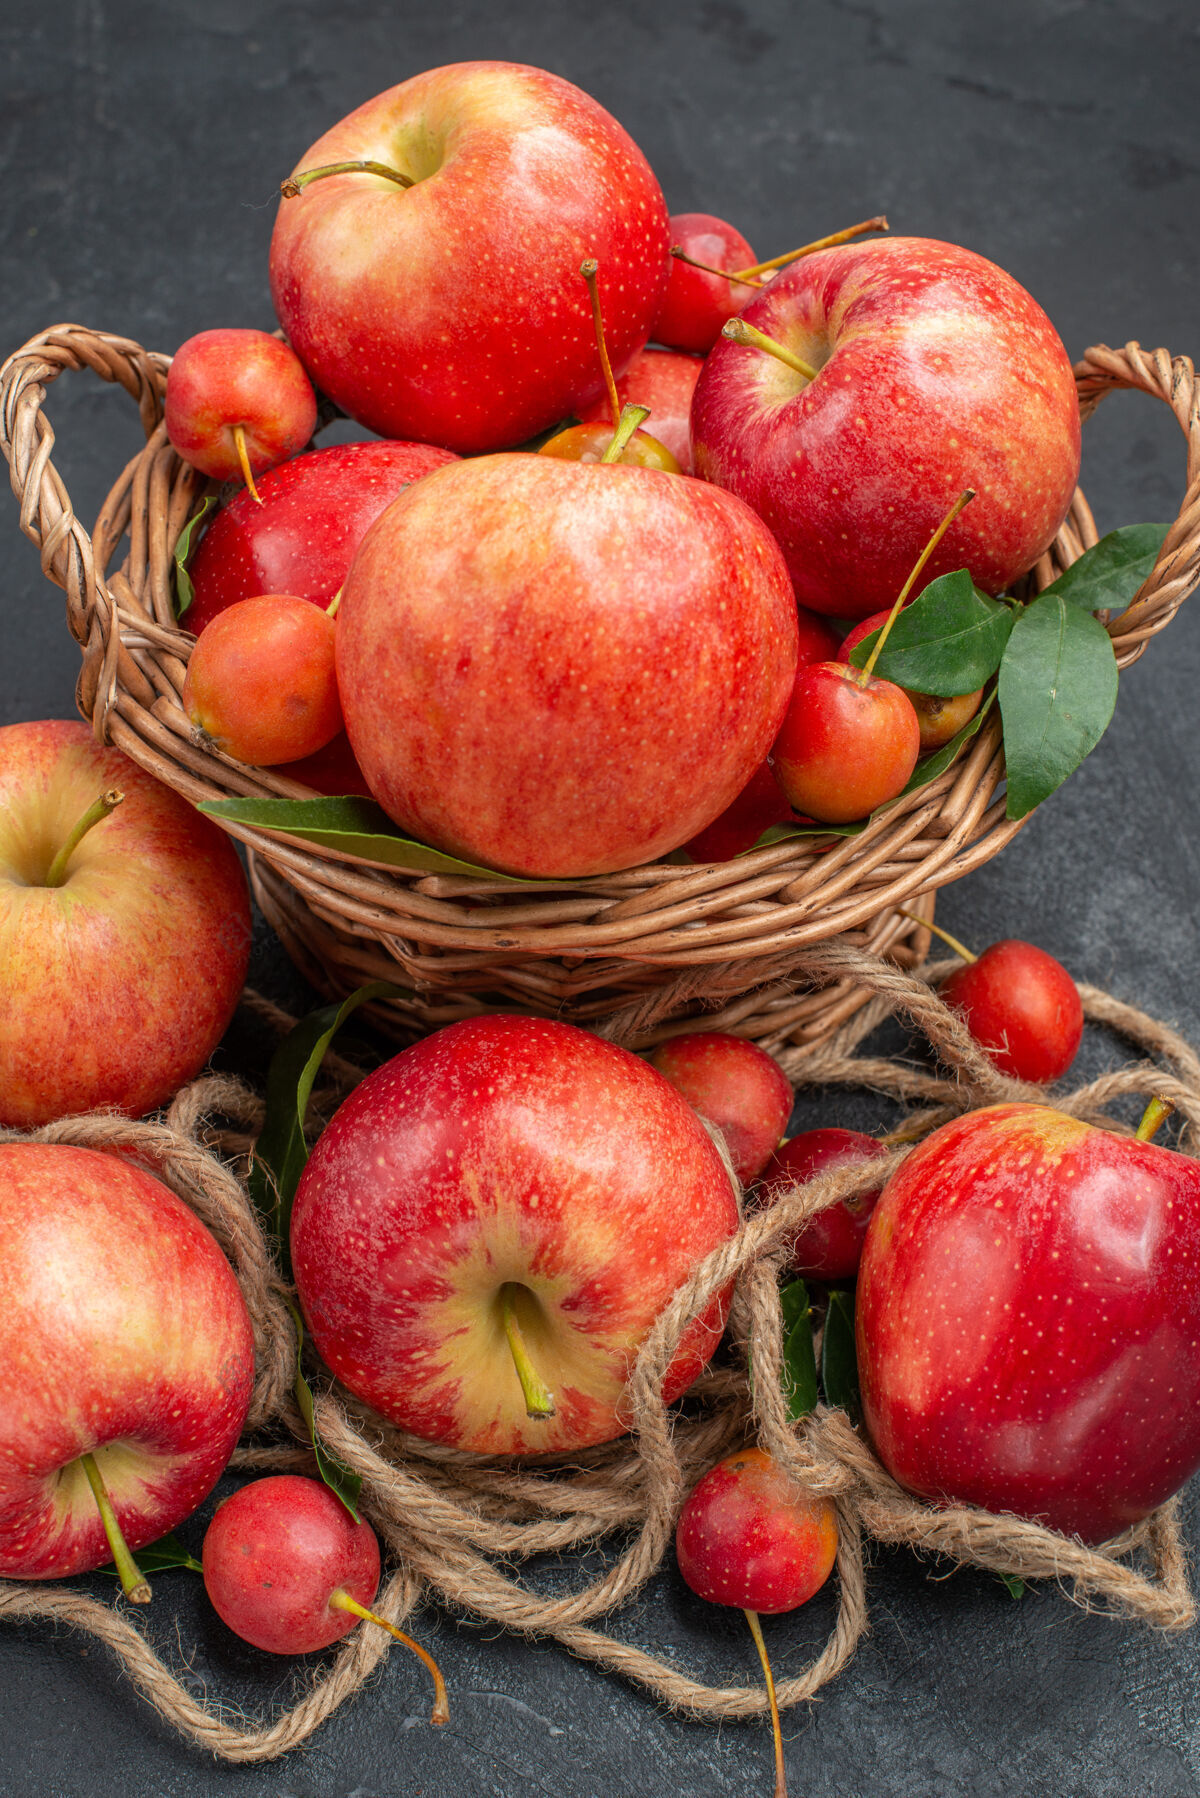 美味侧面特写镜头苹果开胃的樱桃在篮子里樱桃吃苹果多汁